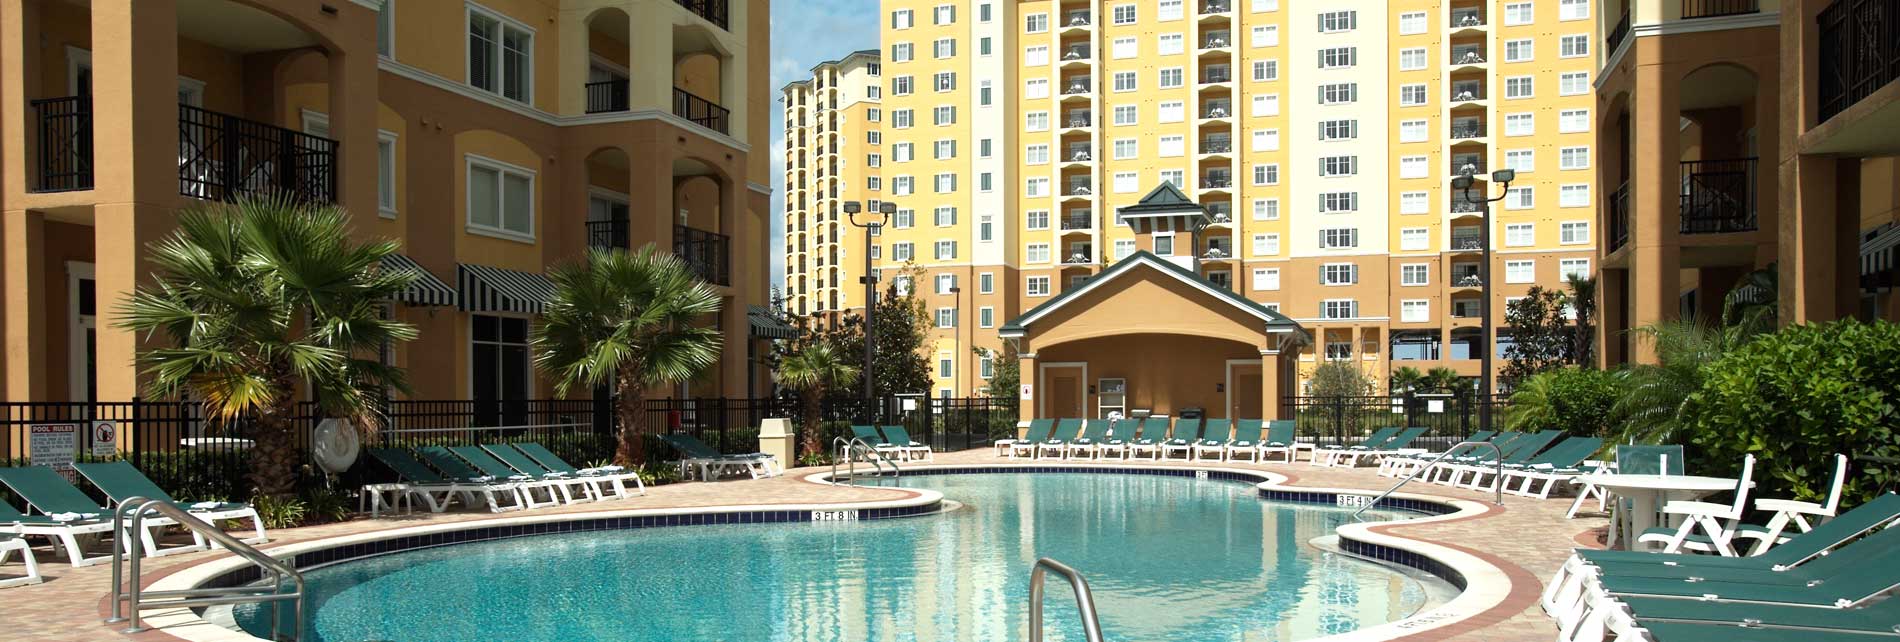 Orlando Hotel Suites Hotels Near Disney Springs Contact Lake Buena Vista Resort Village Spa